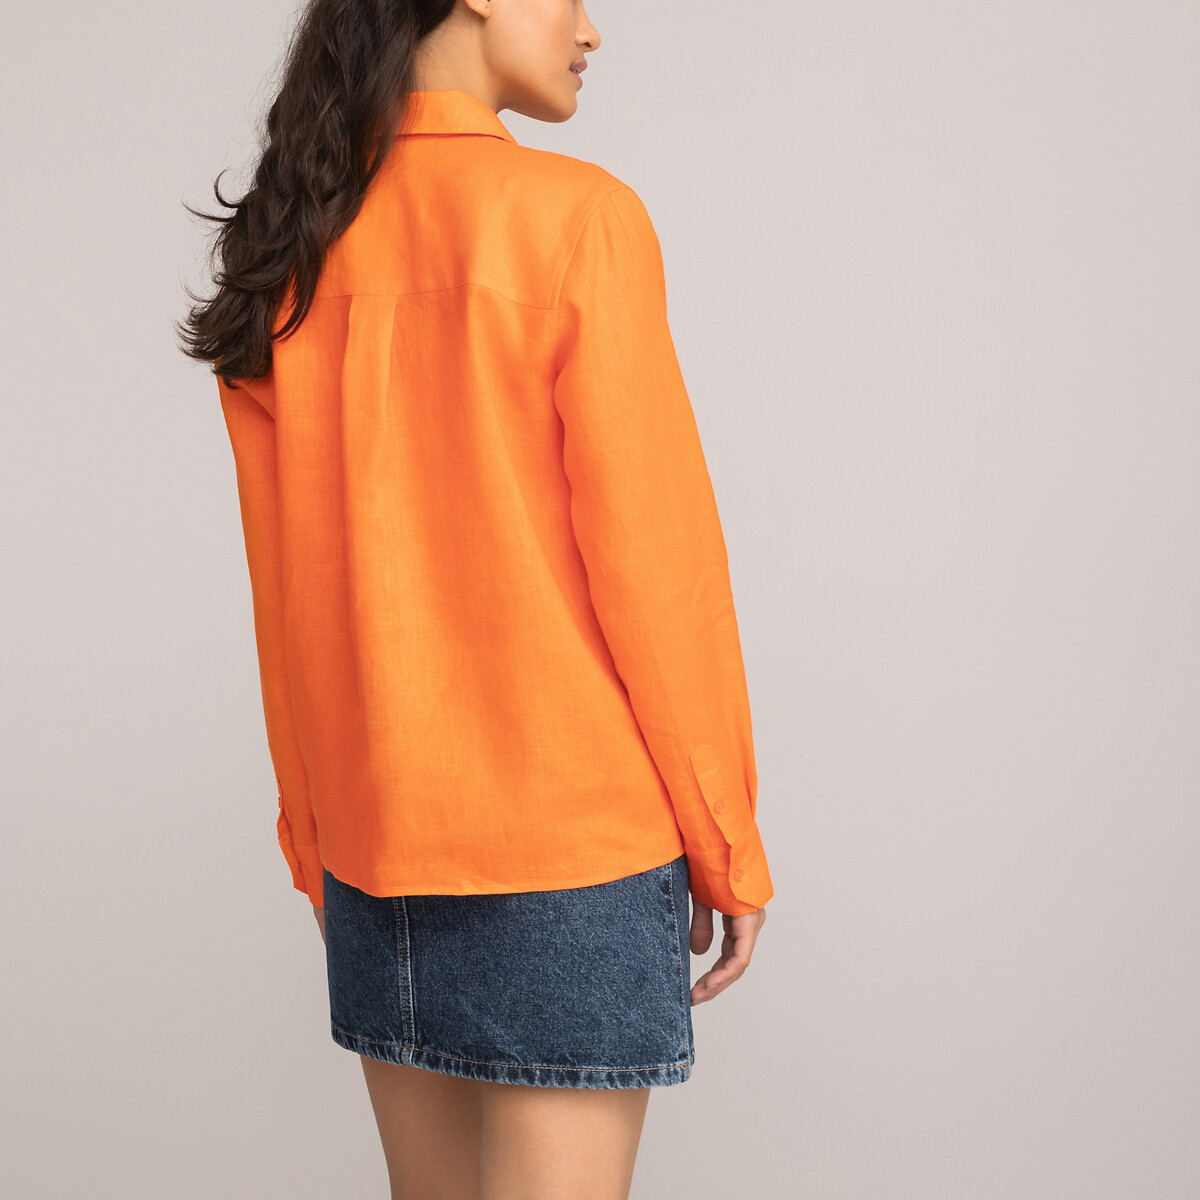 Рубашка Из льна с длинными рукавами 36 (FR) - 42 (RUS) оранжевый LaRedoute, размер 36 (FR) - 42 (RUS) Рубашка Из льна с длинными рукавами 36 (FR) - 42 (RUS) оранжевый - фото 4